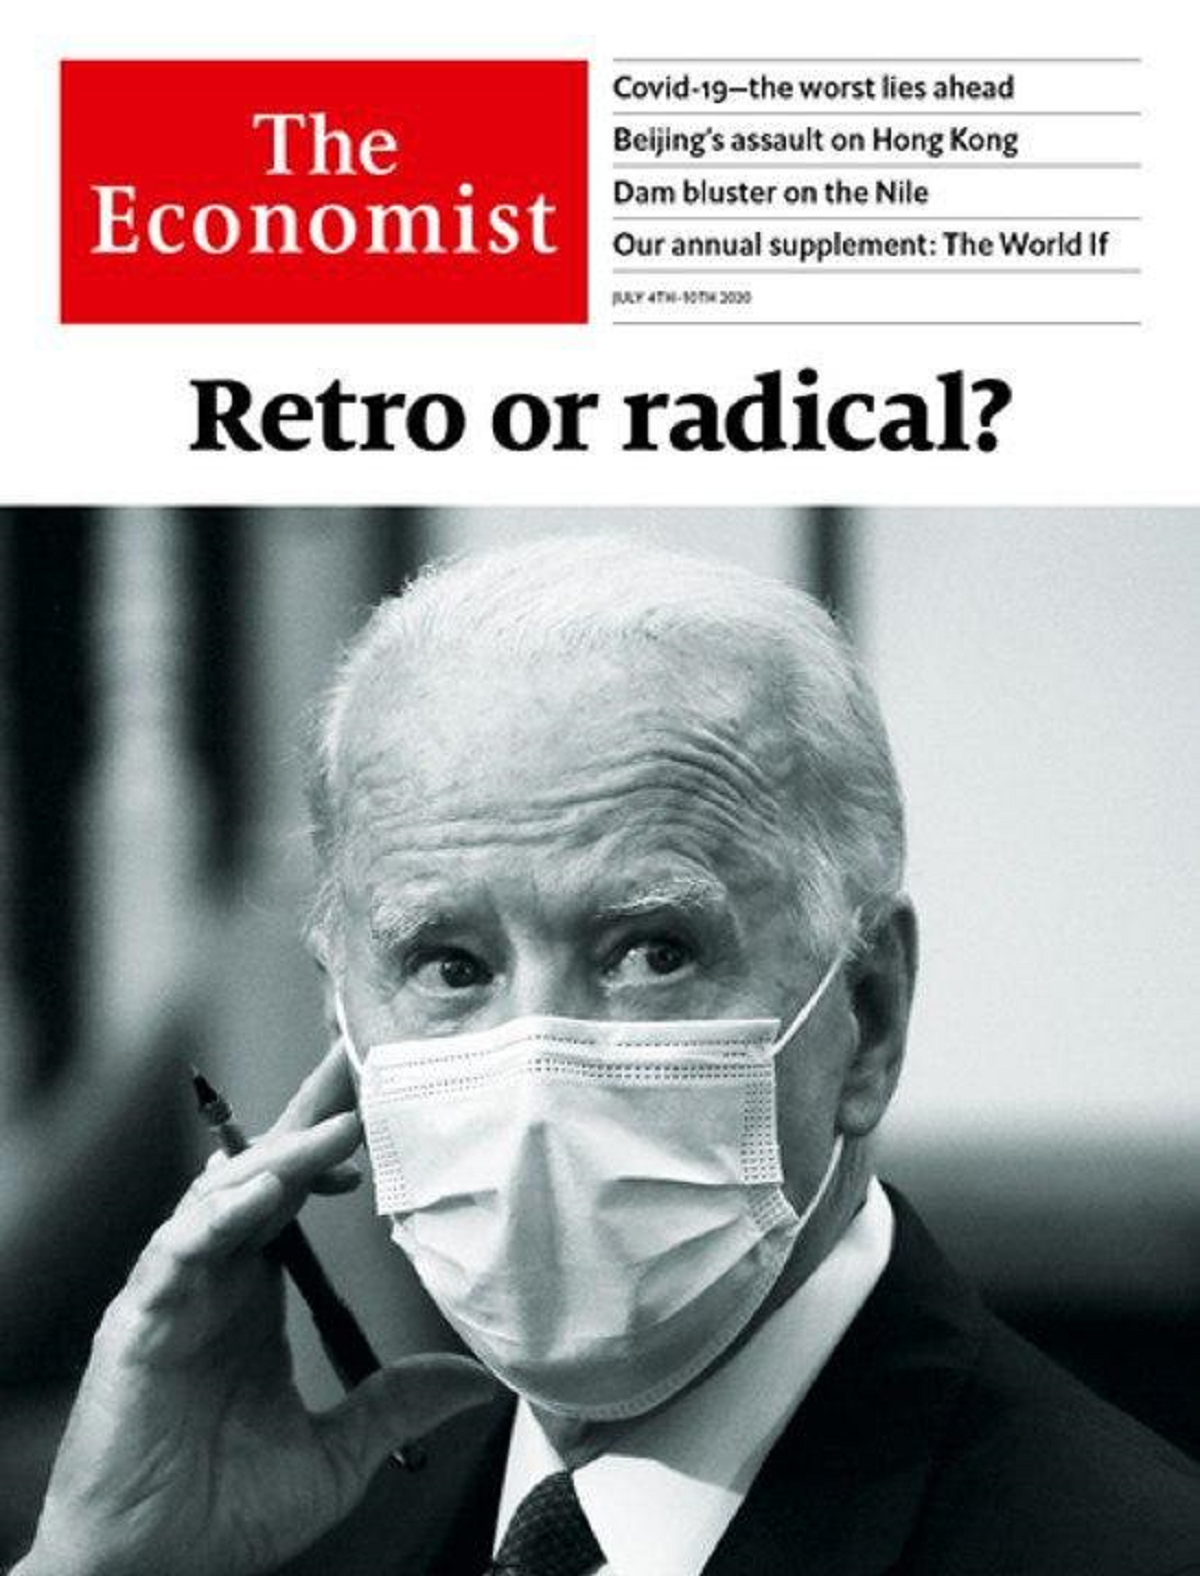 "محافظه کار یا رادیکال؟" روی جلد اکونومیست